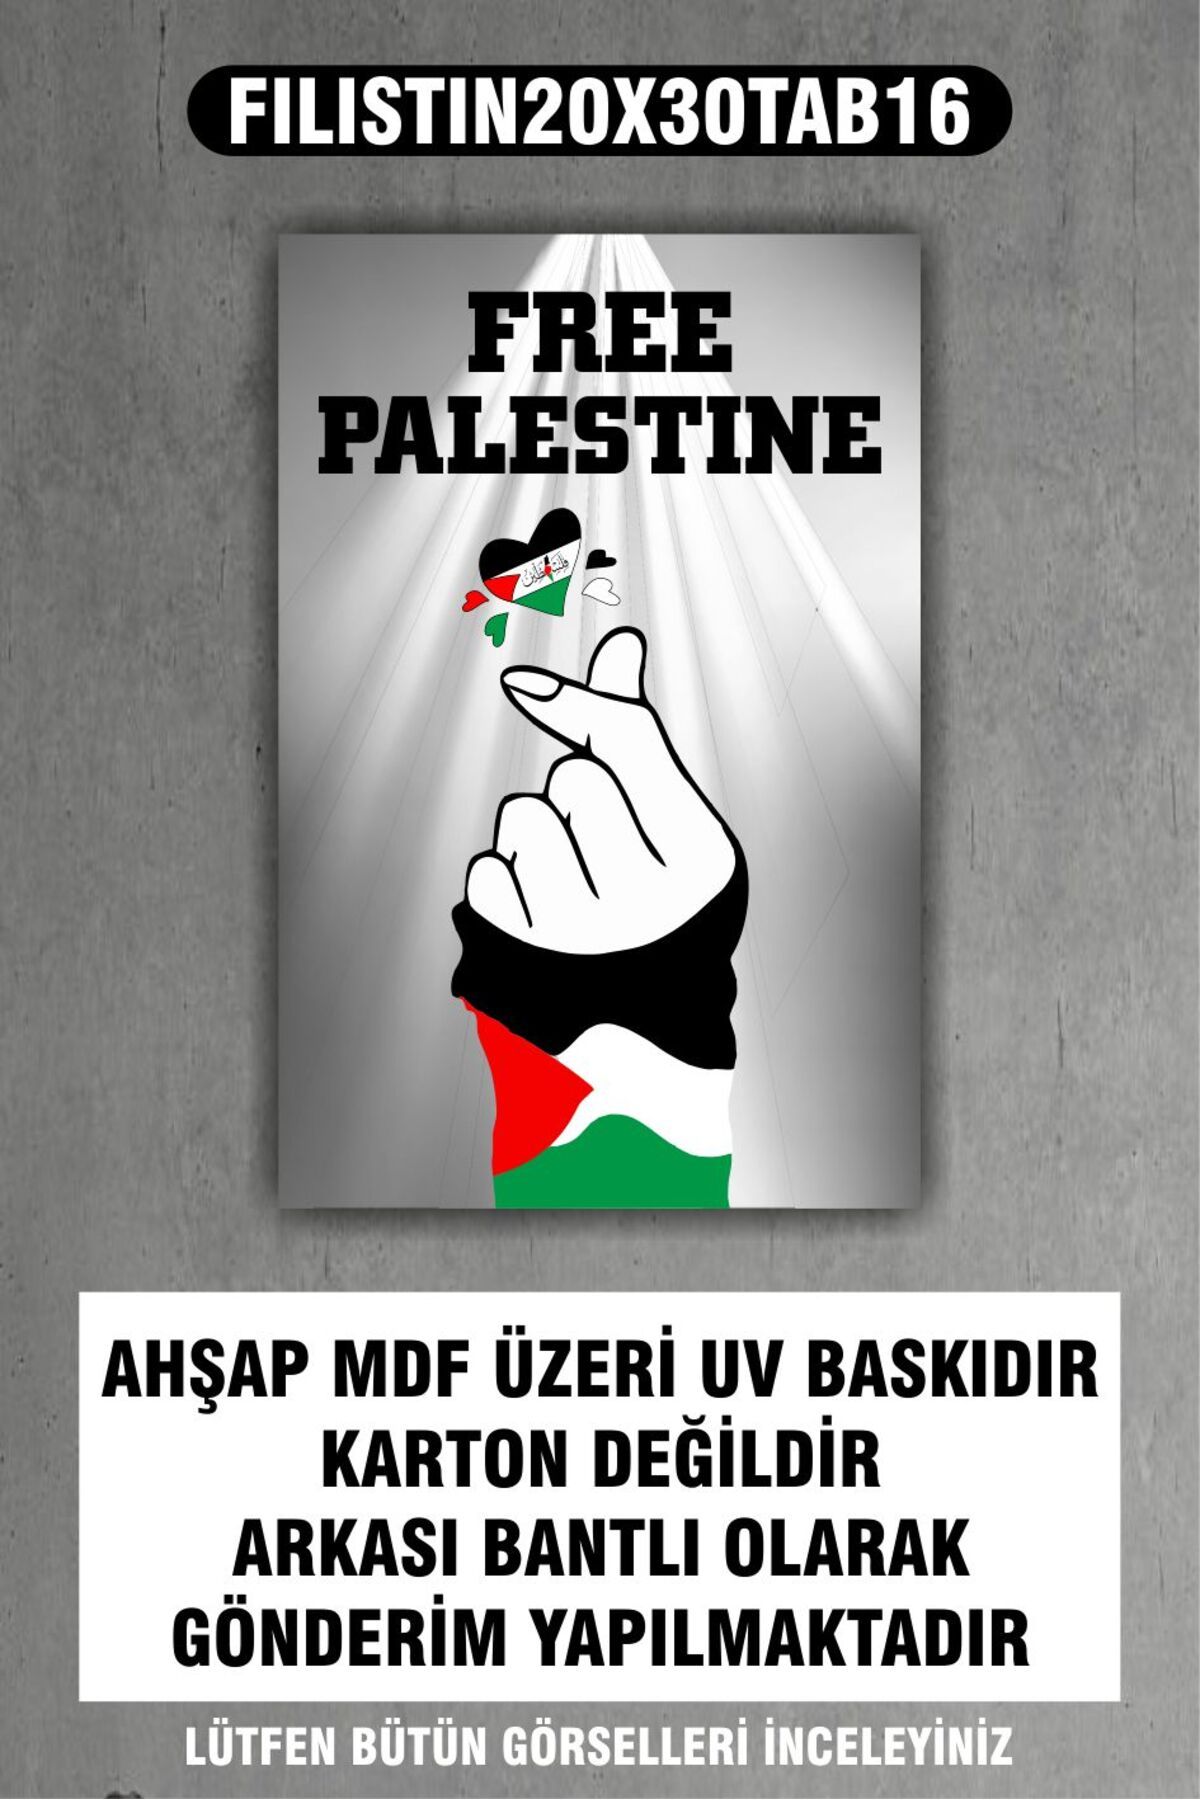 OneMina 1 Parça (20x30) A4 Ebat Mdf Filistin Kalp Selamı Free Palestine Tablo Poster - FILISTIN20X30-016